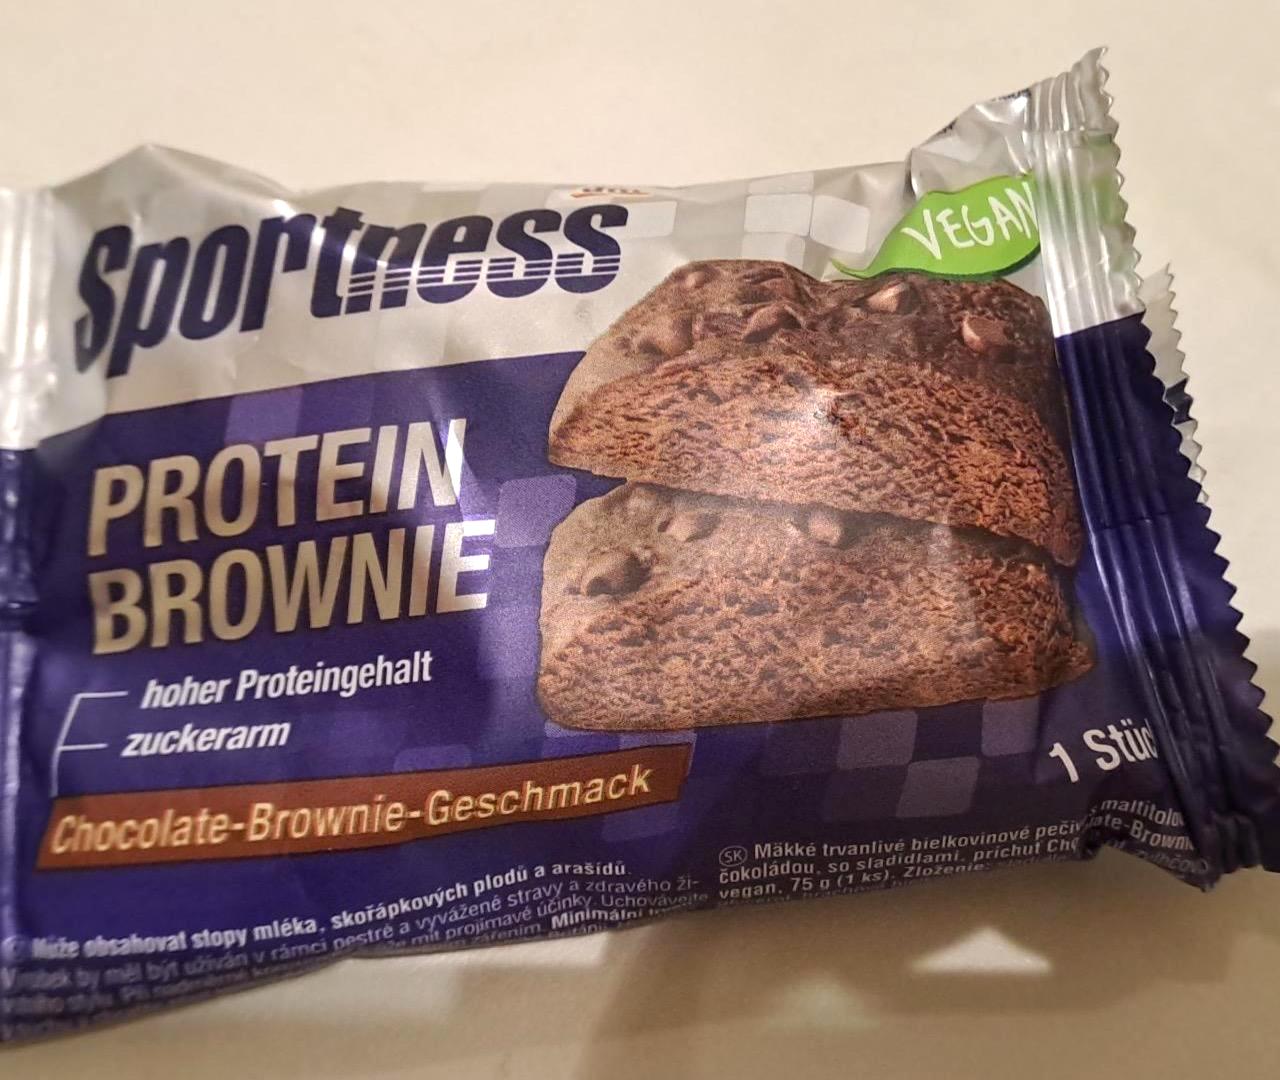 Képek - Protein brownie Chocolate-brownie Sportness